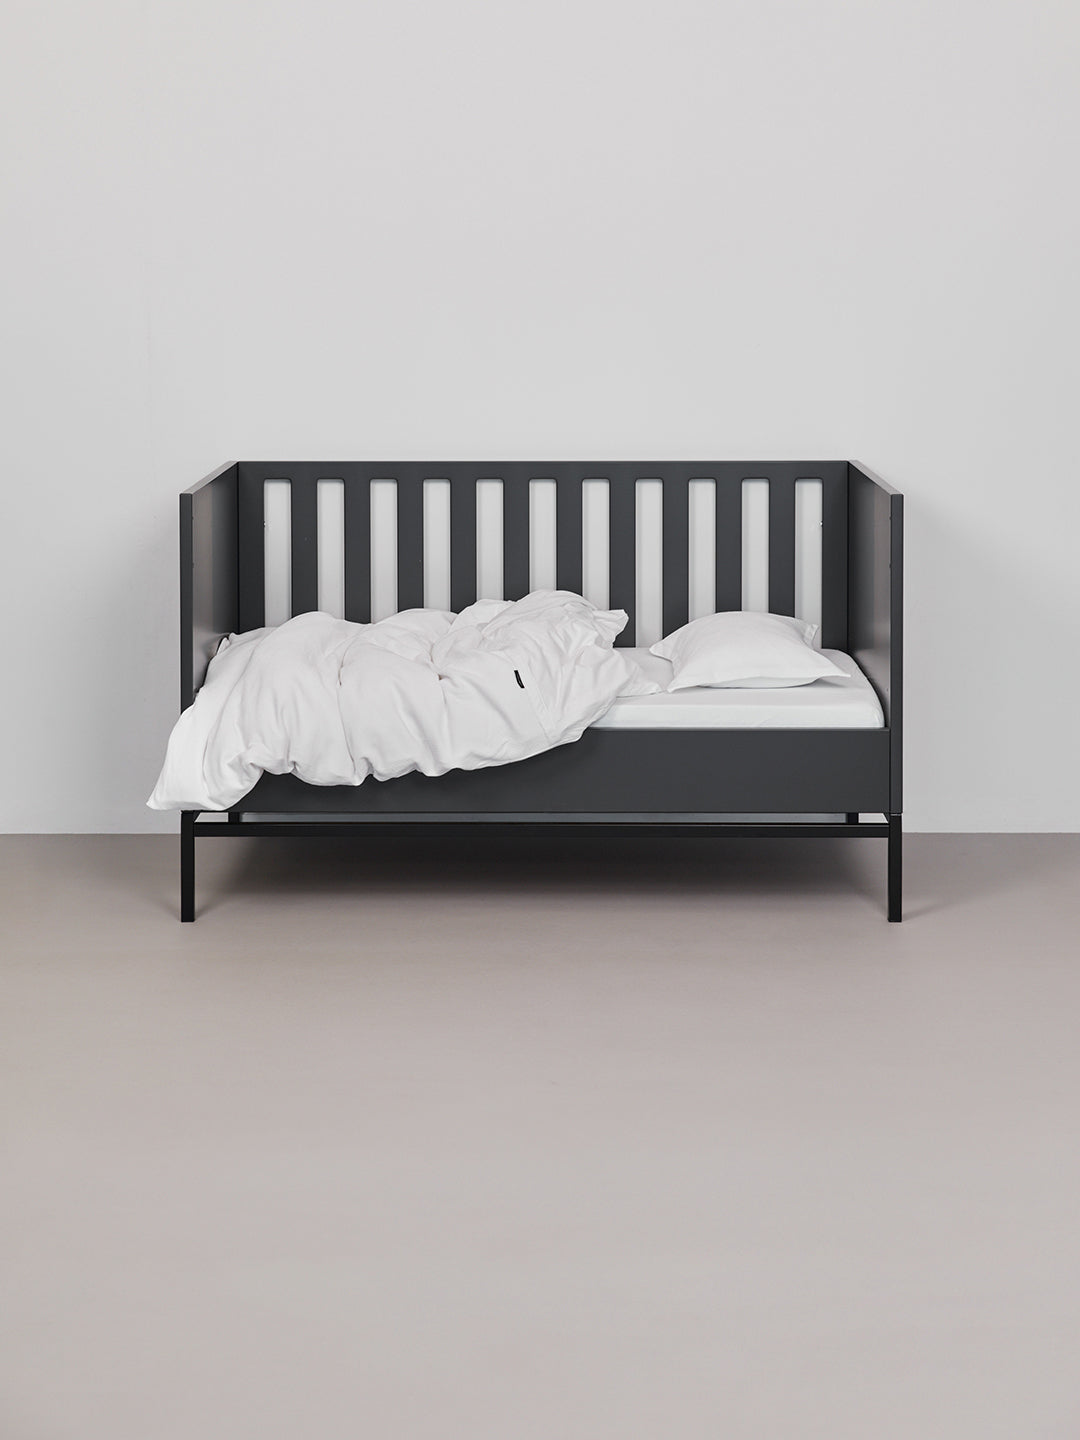 מצעים למיטת תינוק בצבע לבן בתוך עריסה שחורה פתוחה הכולל סדין, שמיכת קיץ וכרית